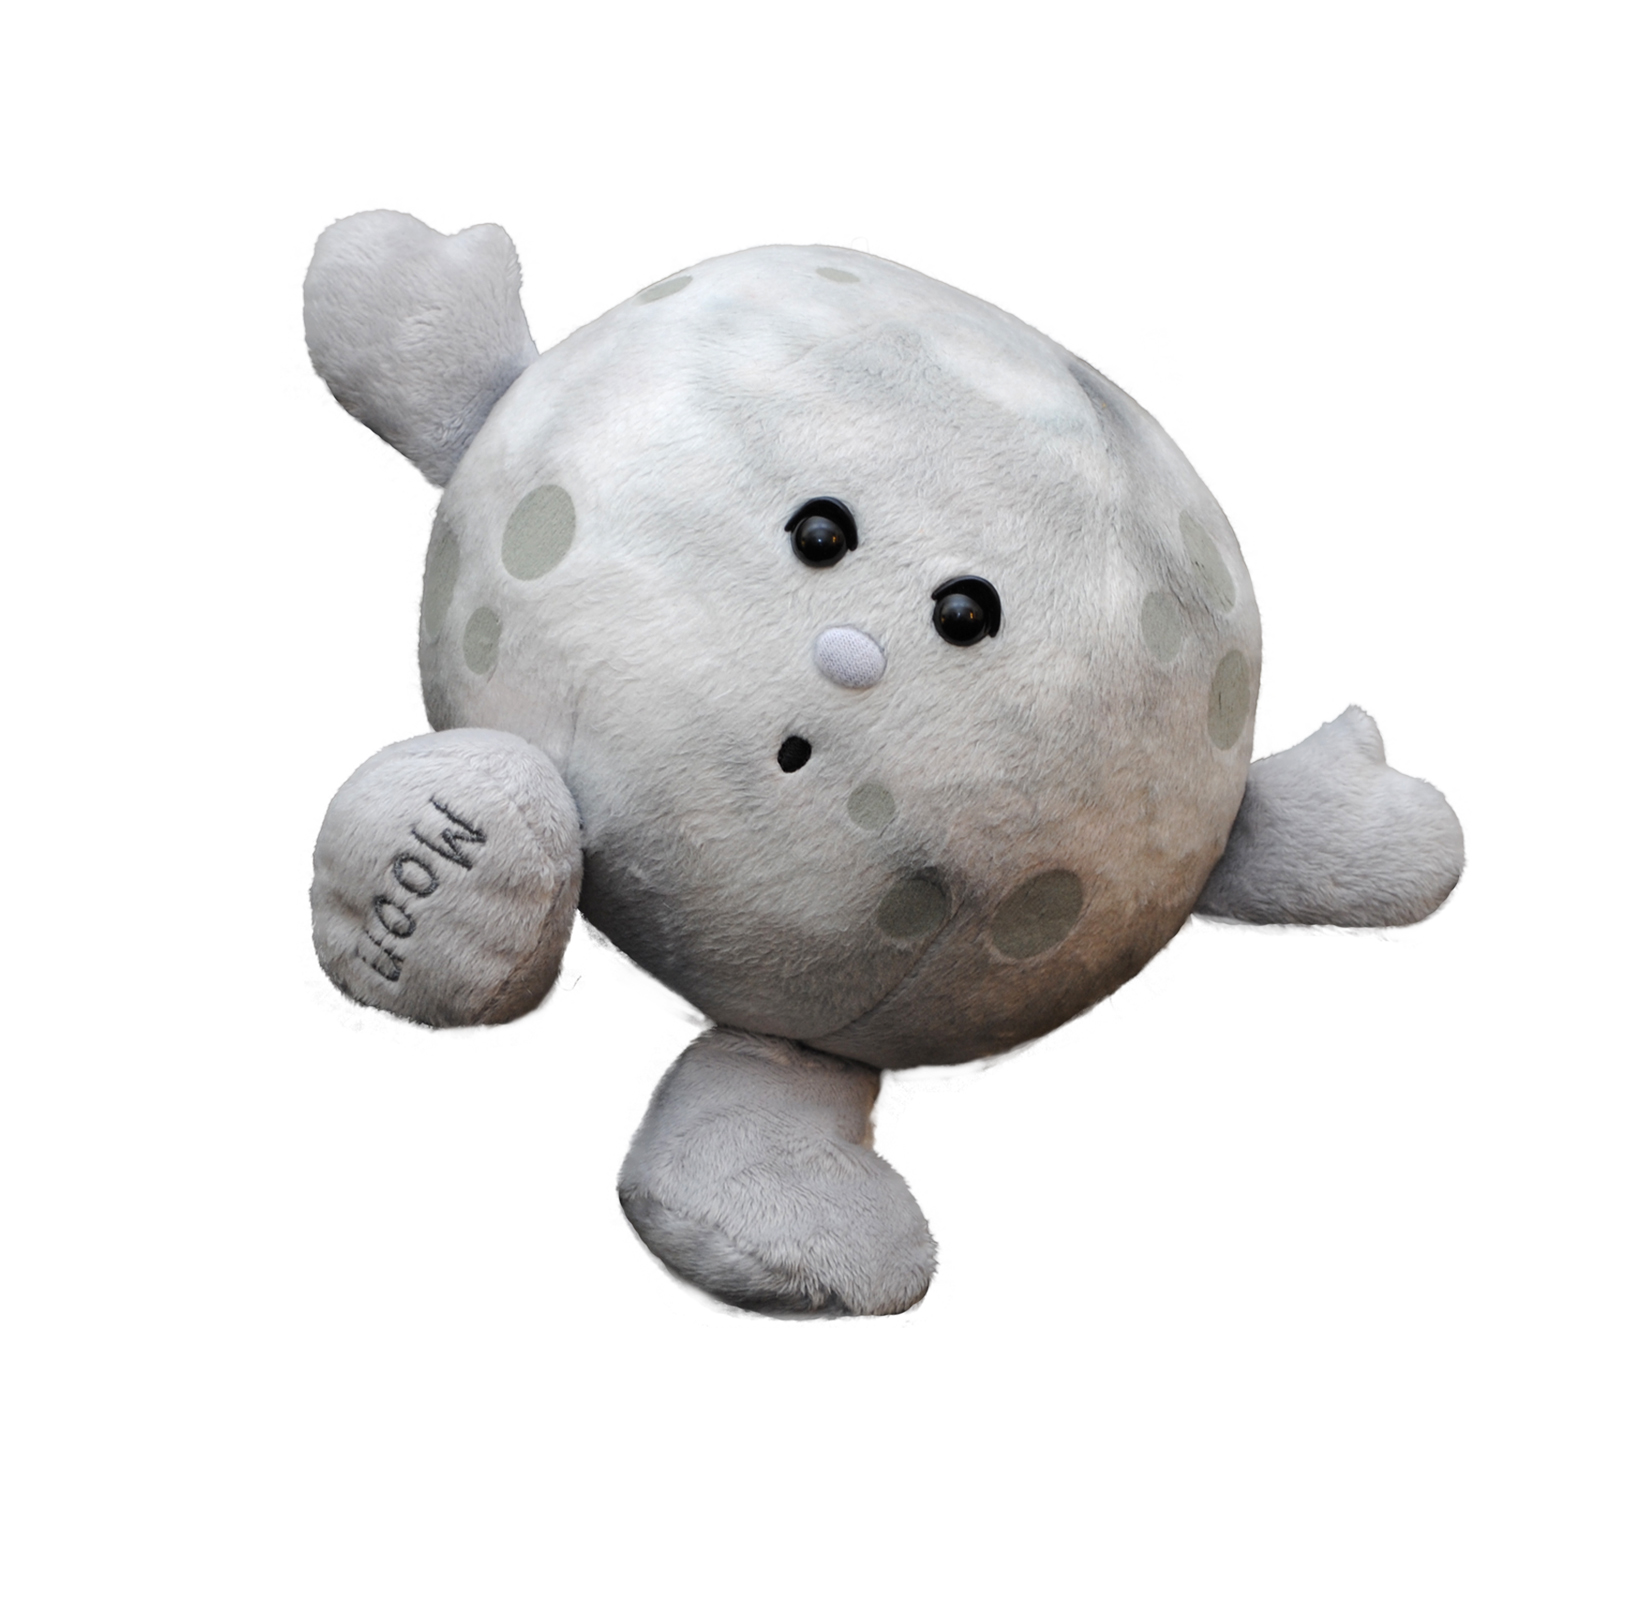 moon stuffed animal